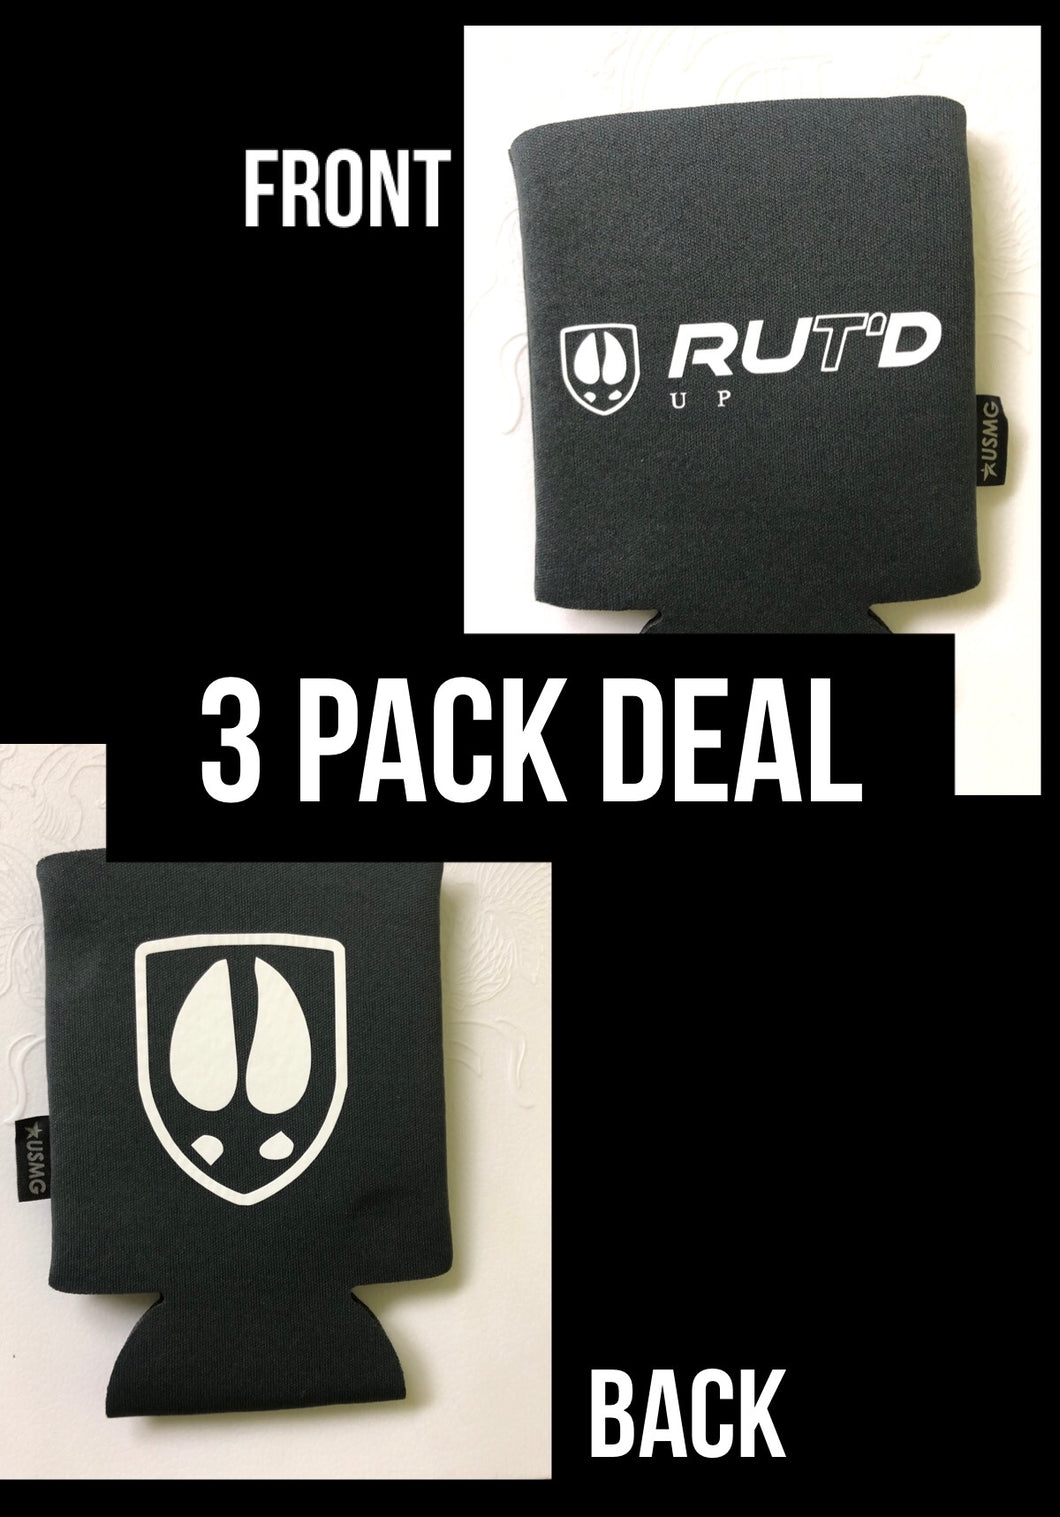 Rut’d Up Koozies 3 Pack